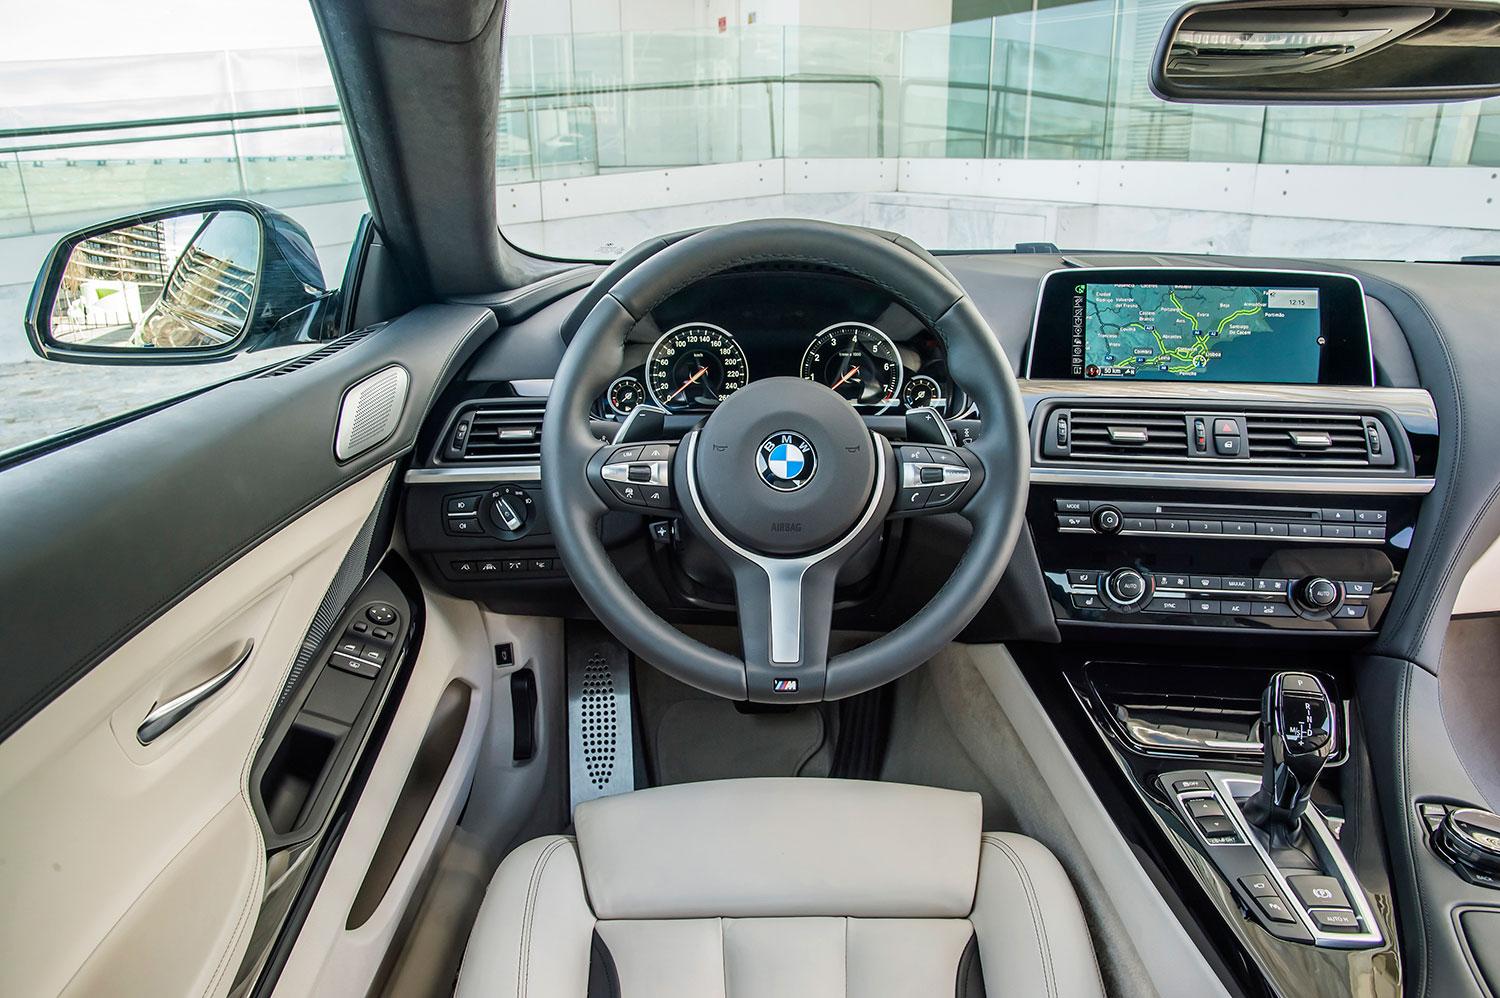 Större skärm samt digitaliserat instrumentkluster är de interiöra nyheterna i BMW 650i.